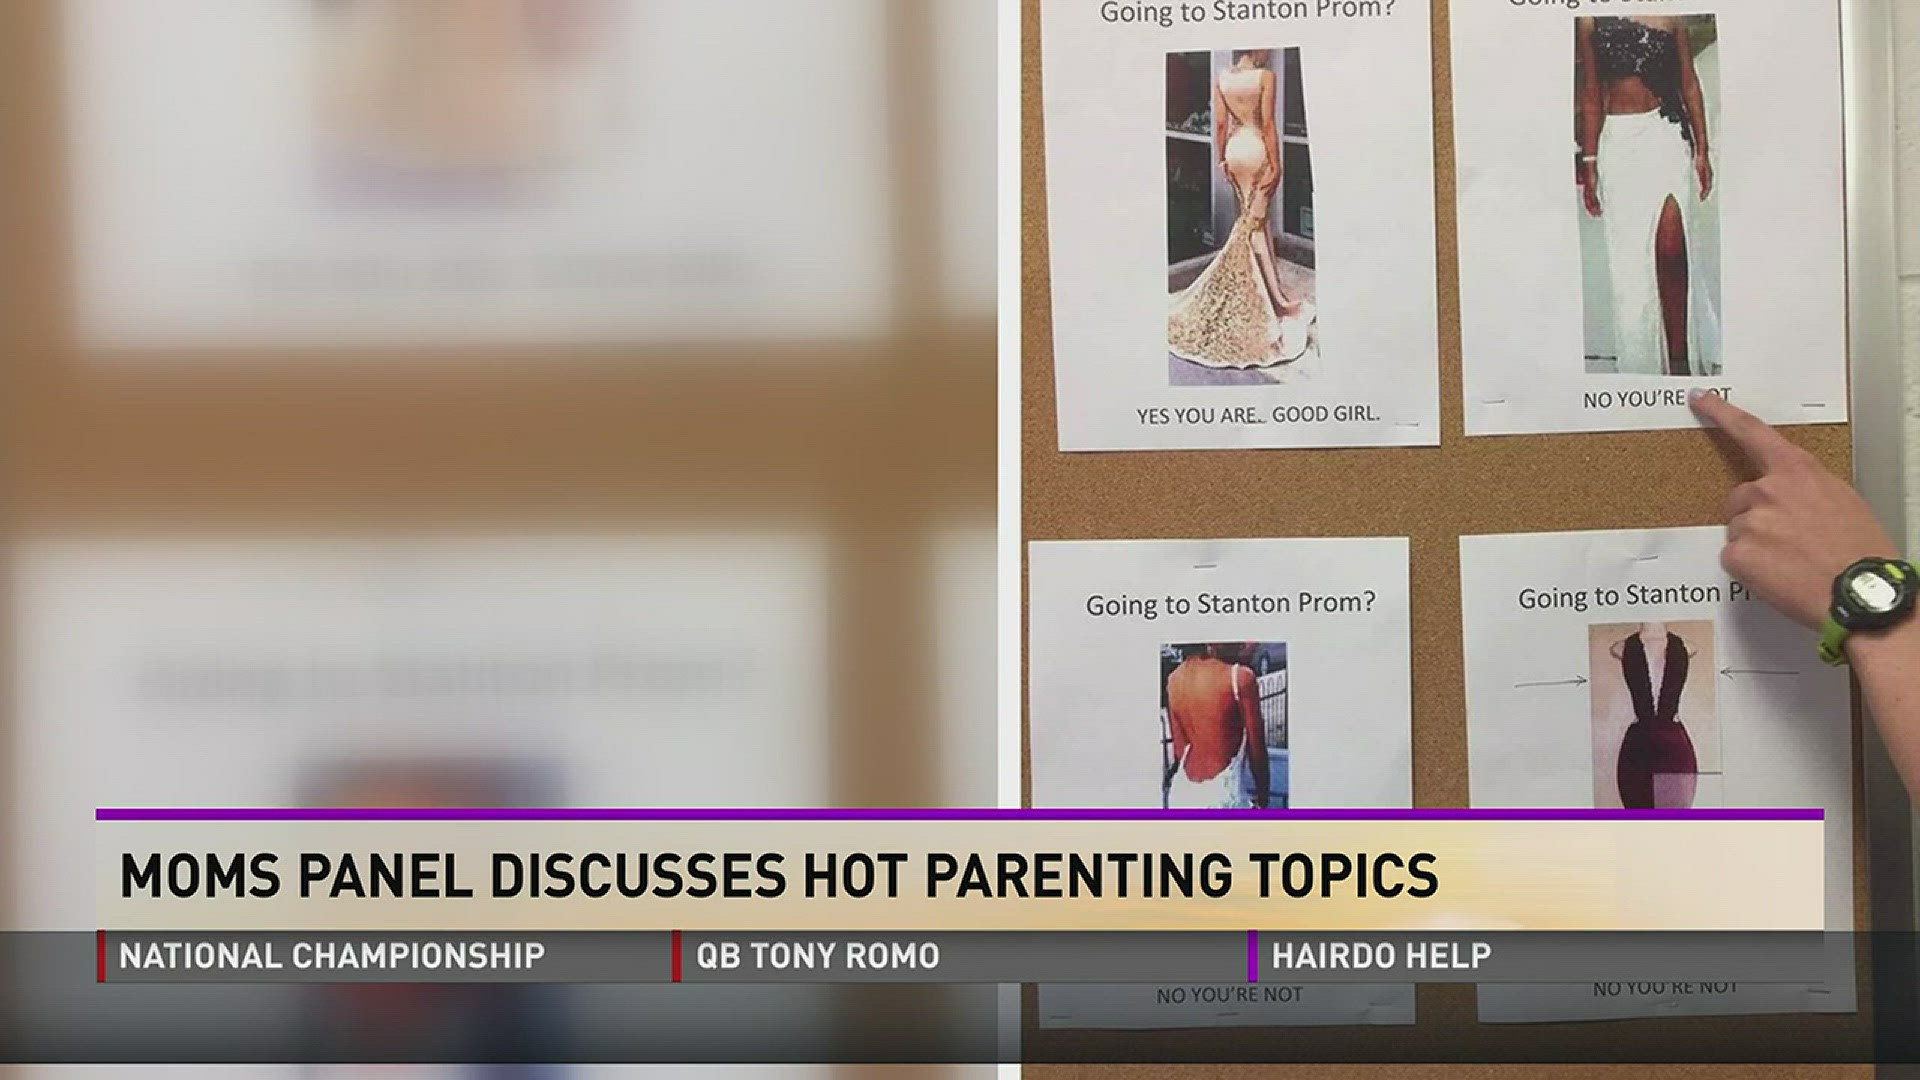 Moms Panel Discusses Hot Parenting Topics